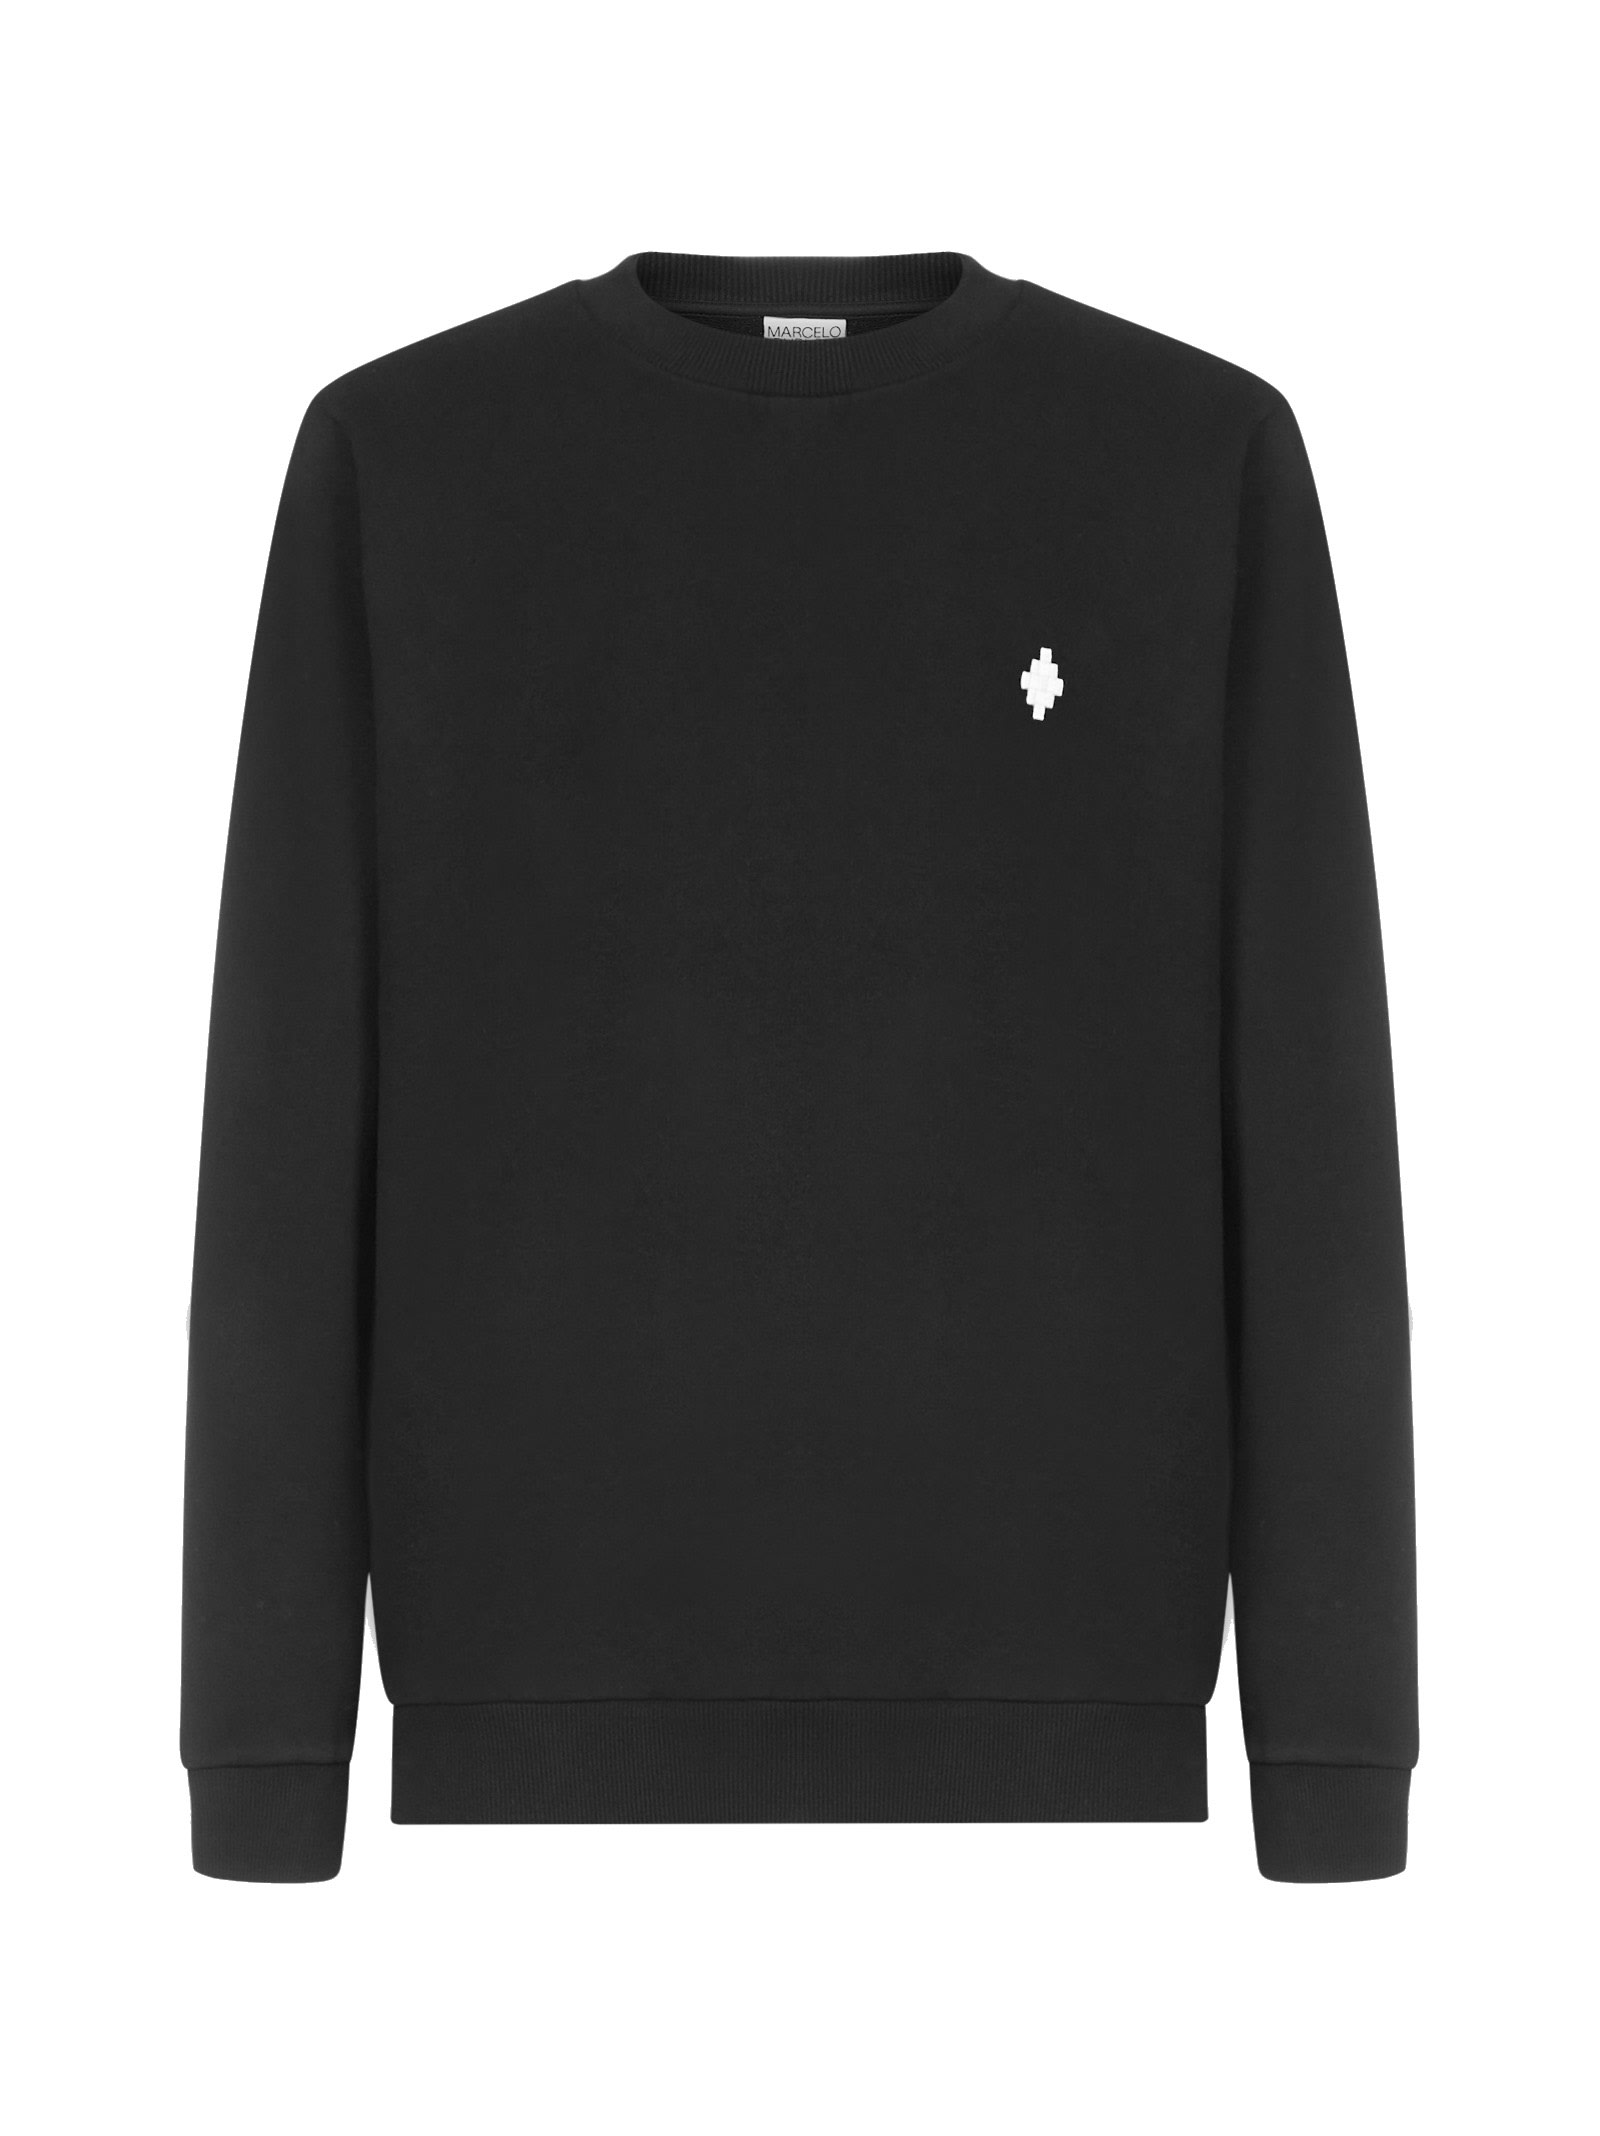 Marcelo Burlon Cross Cotton Sweatshirt